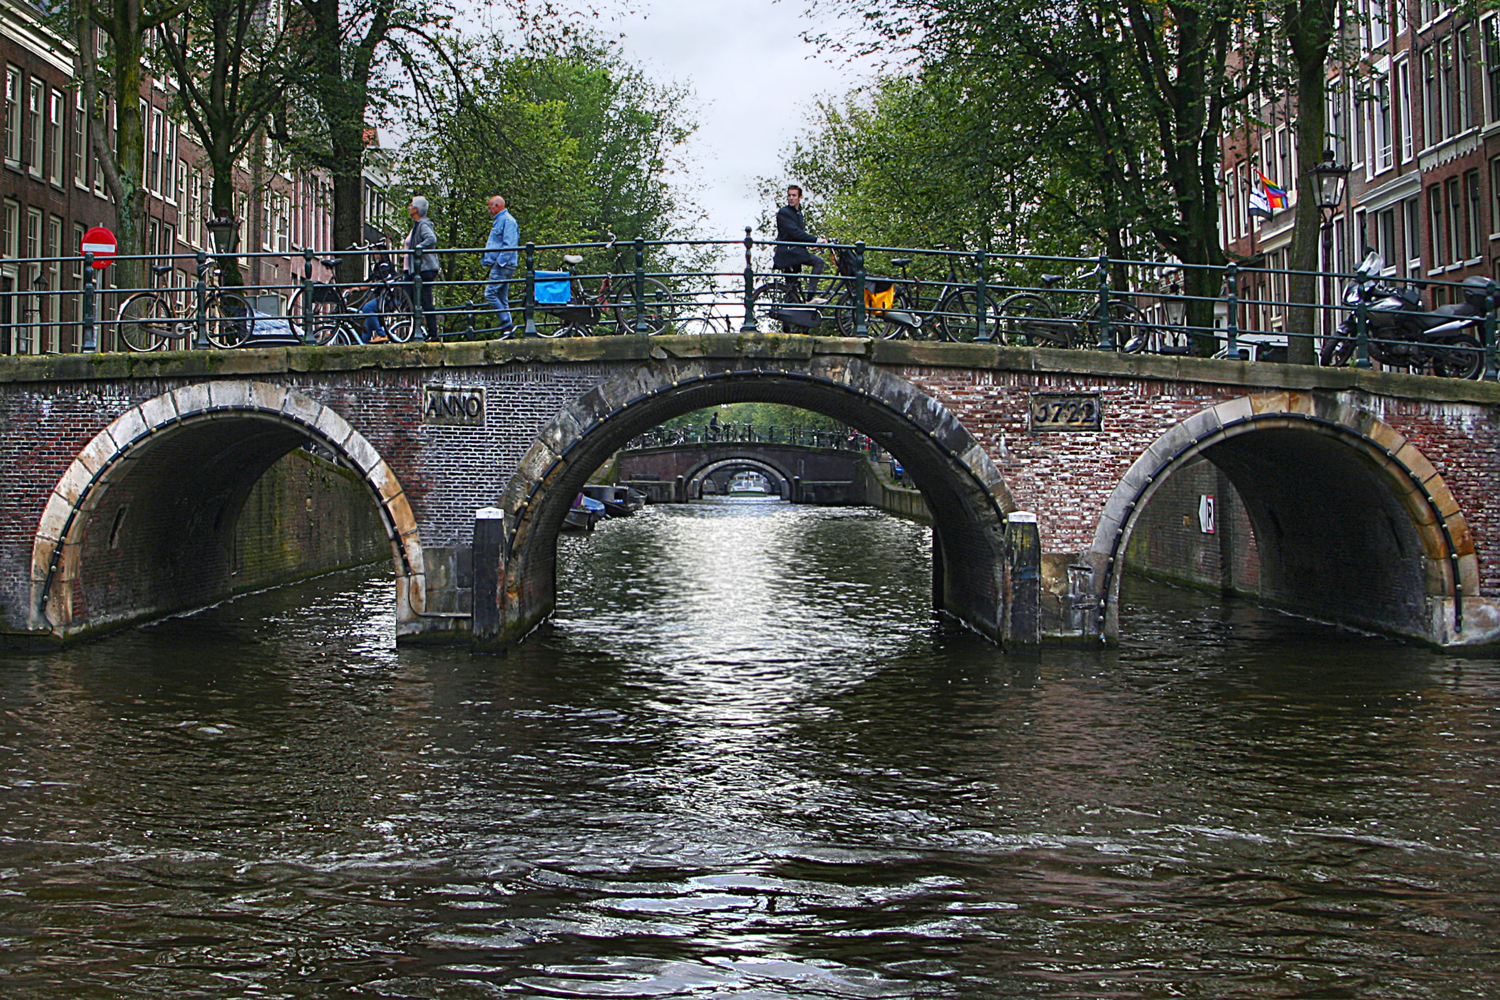 Каналы и мосты